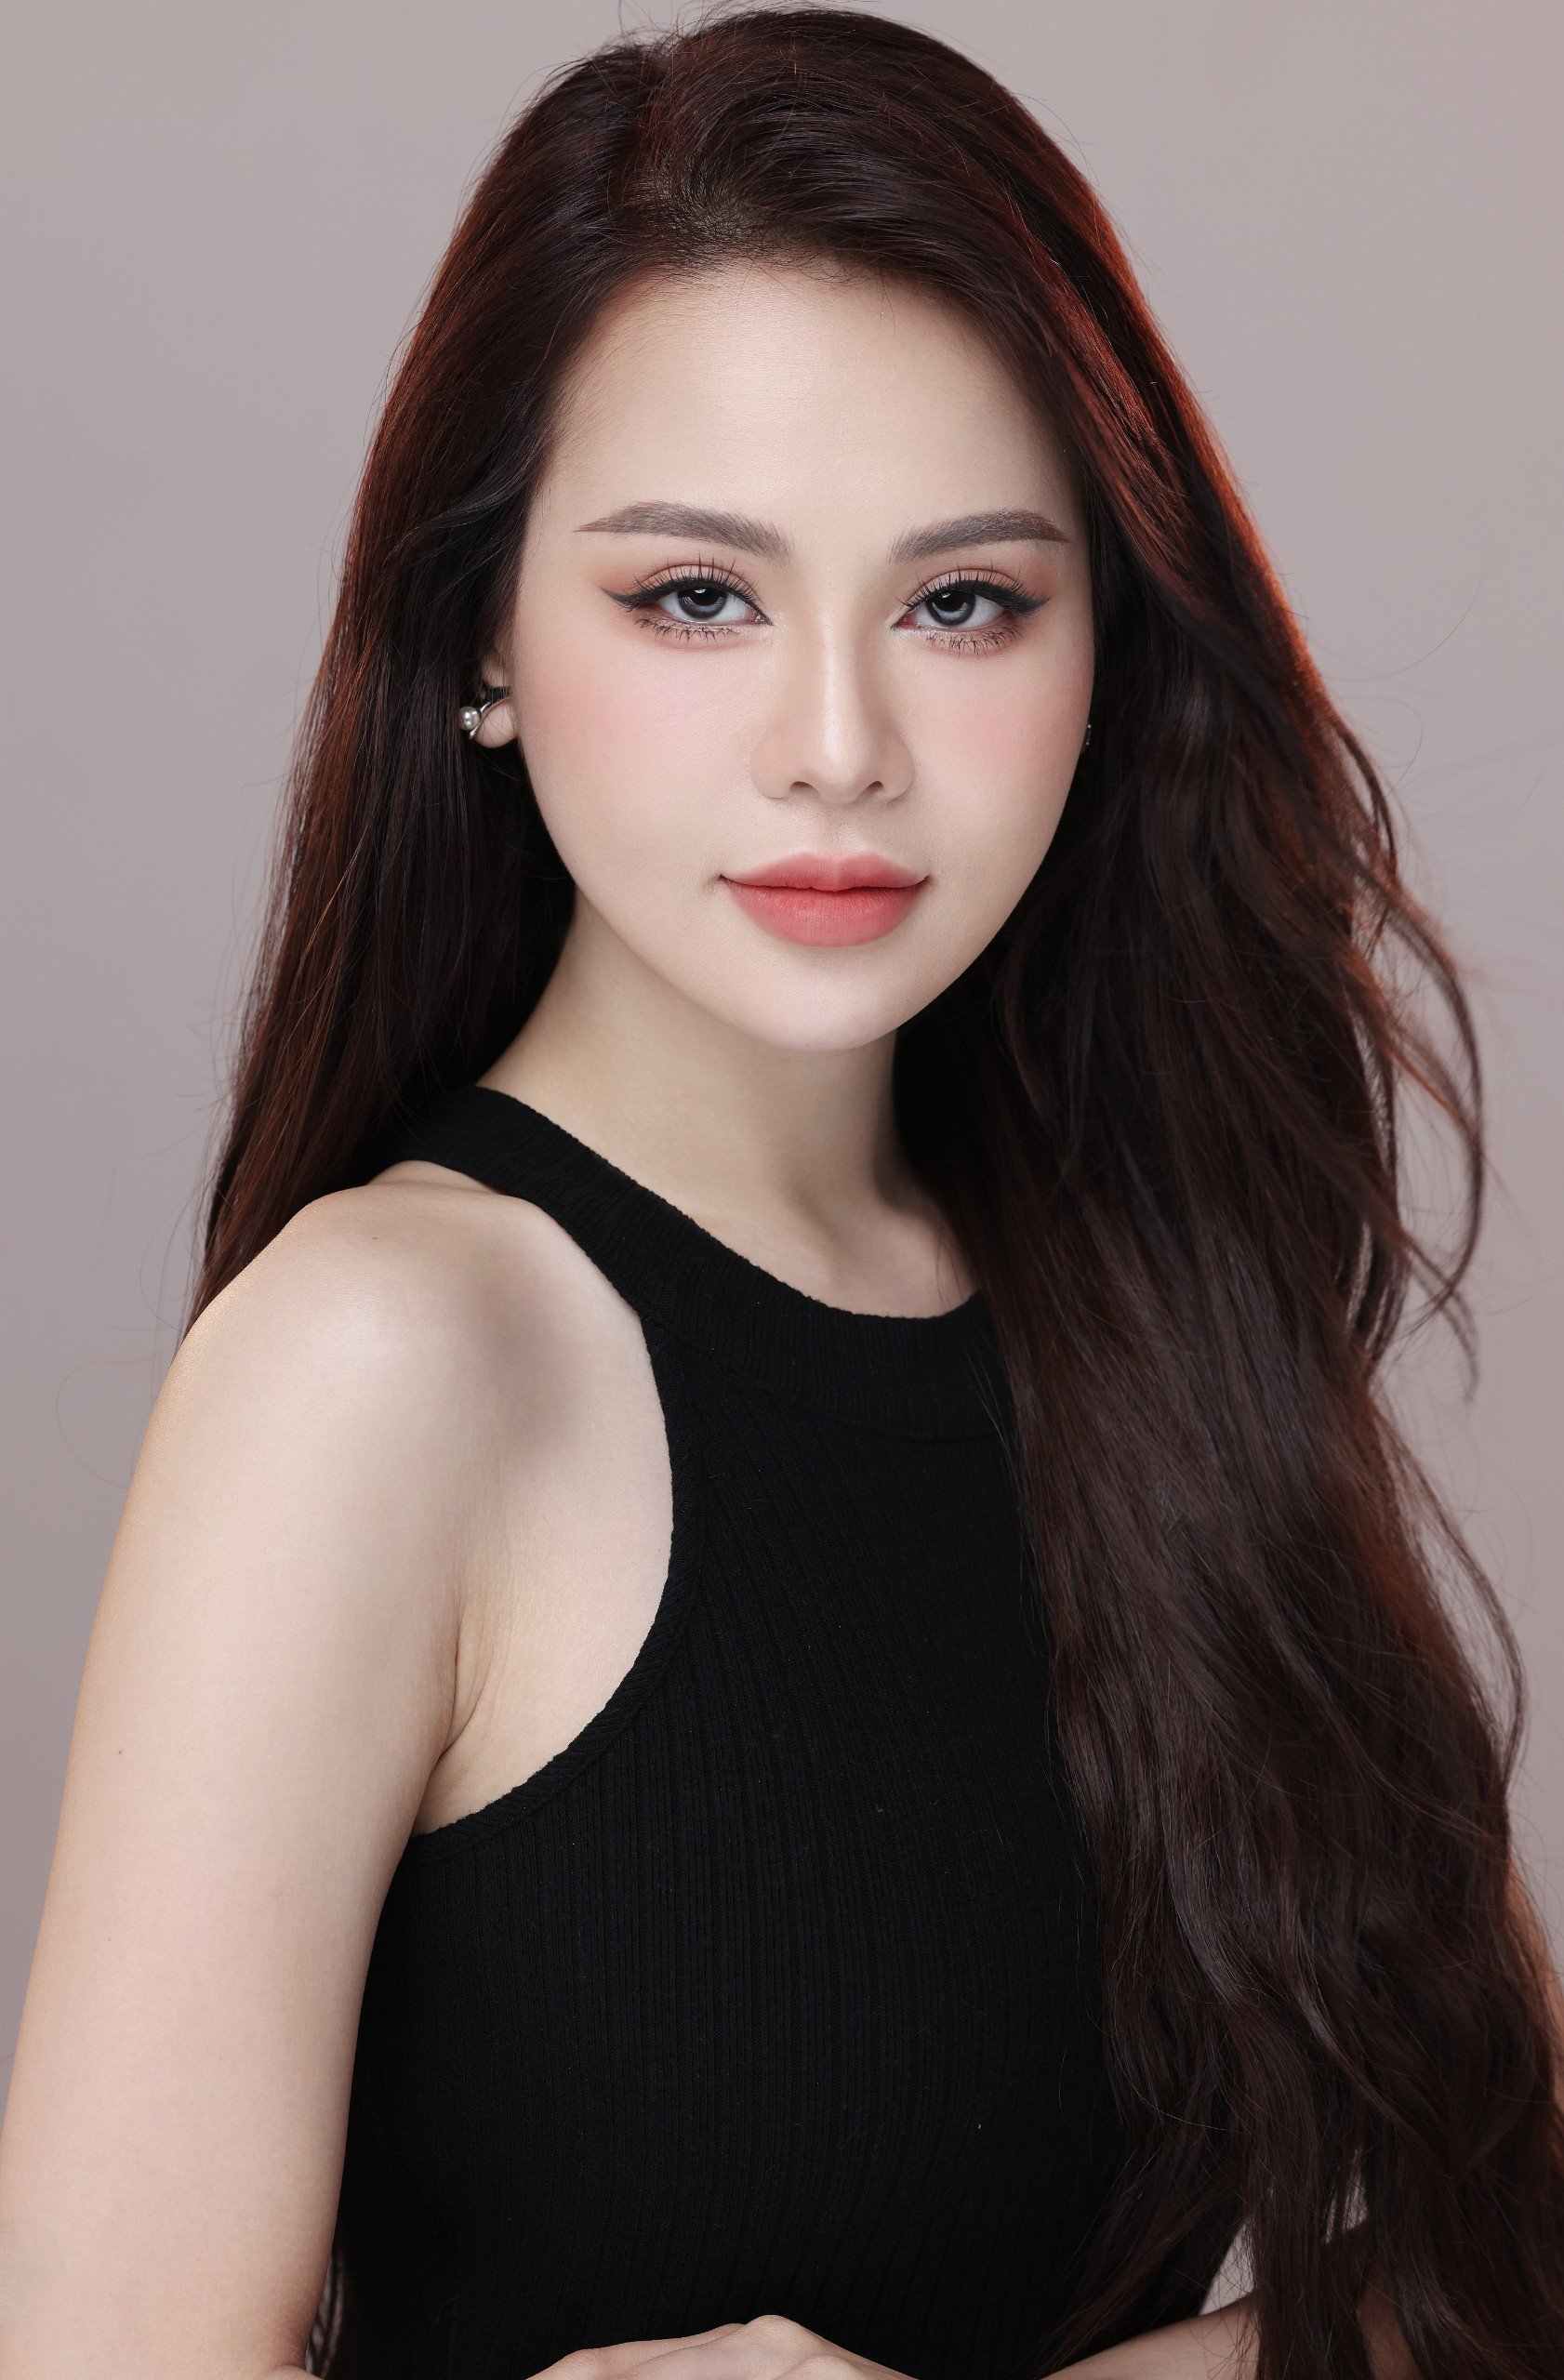 Trần Thị Thùy Trâm sinh năm 1996, từng vào top 8 Vietnam's Next Top Model 2016, top 11 Vietnam's Next Top Model All Star 2017, top 20 Miss Grand Vietnam 2022. Sau khi học diễn xuất trong ba tháng, cô nhận vai chính đầu tay trong phim “Sugar daddy & Sugar baby“. Hiện, cô là người mẫu, diễn viên tự do.